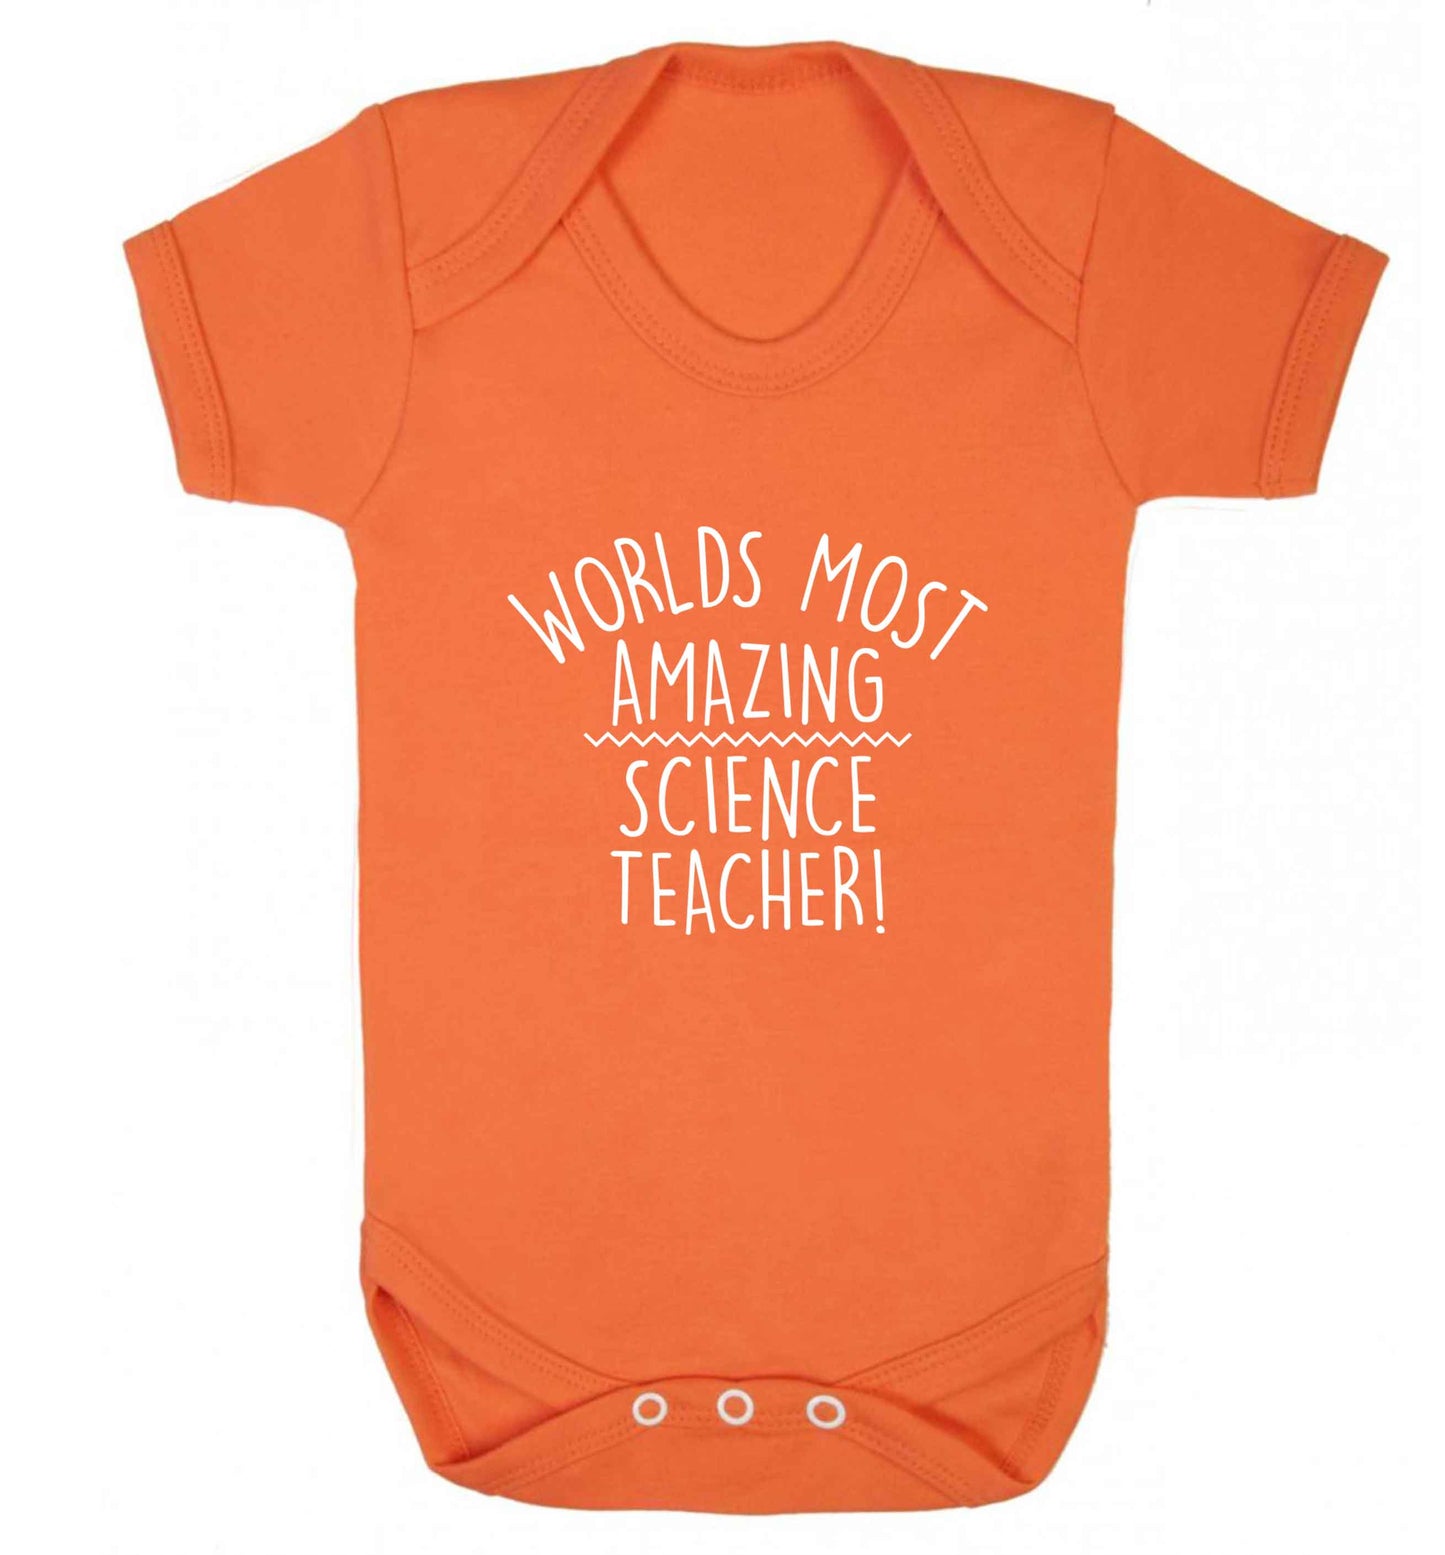 Worlds most amazing science teacher baby vest orange 18-24 months